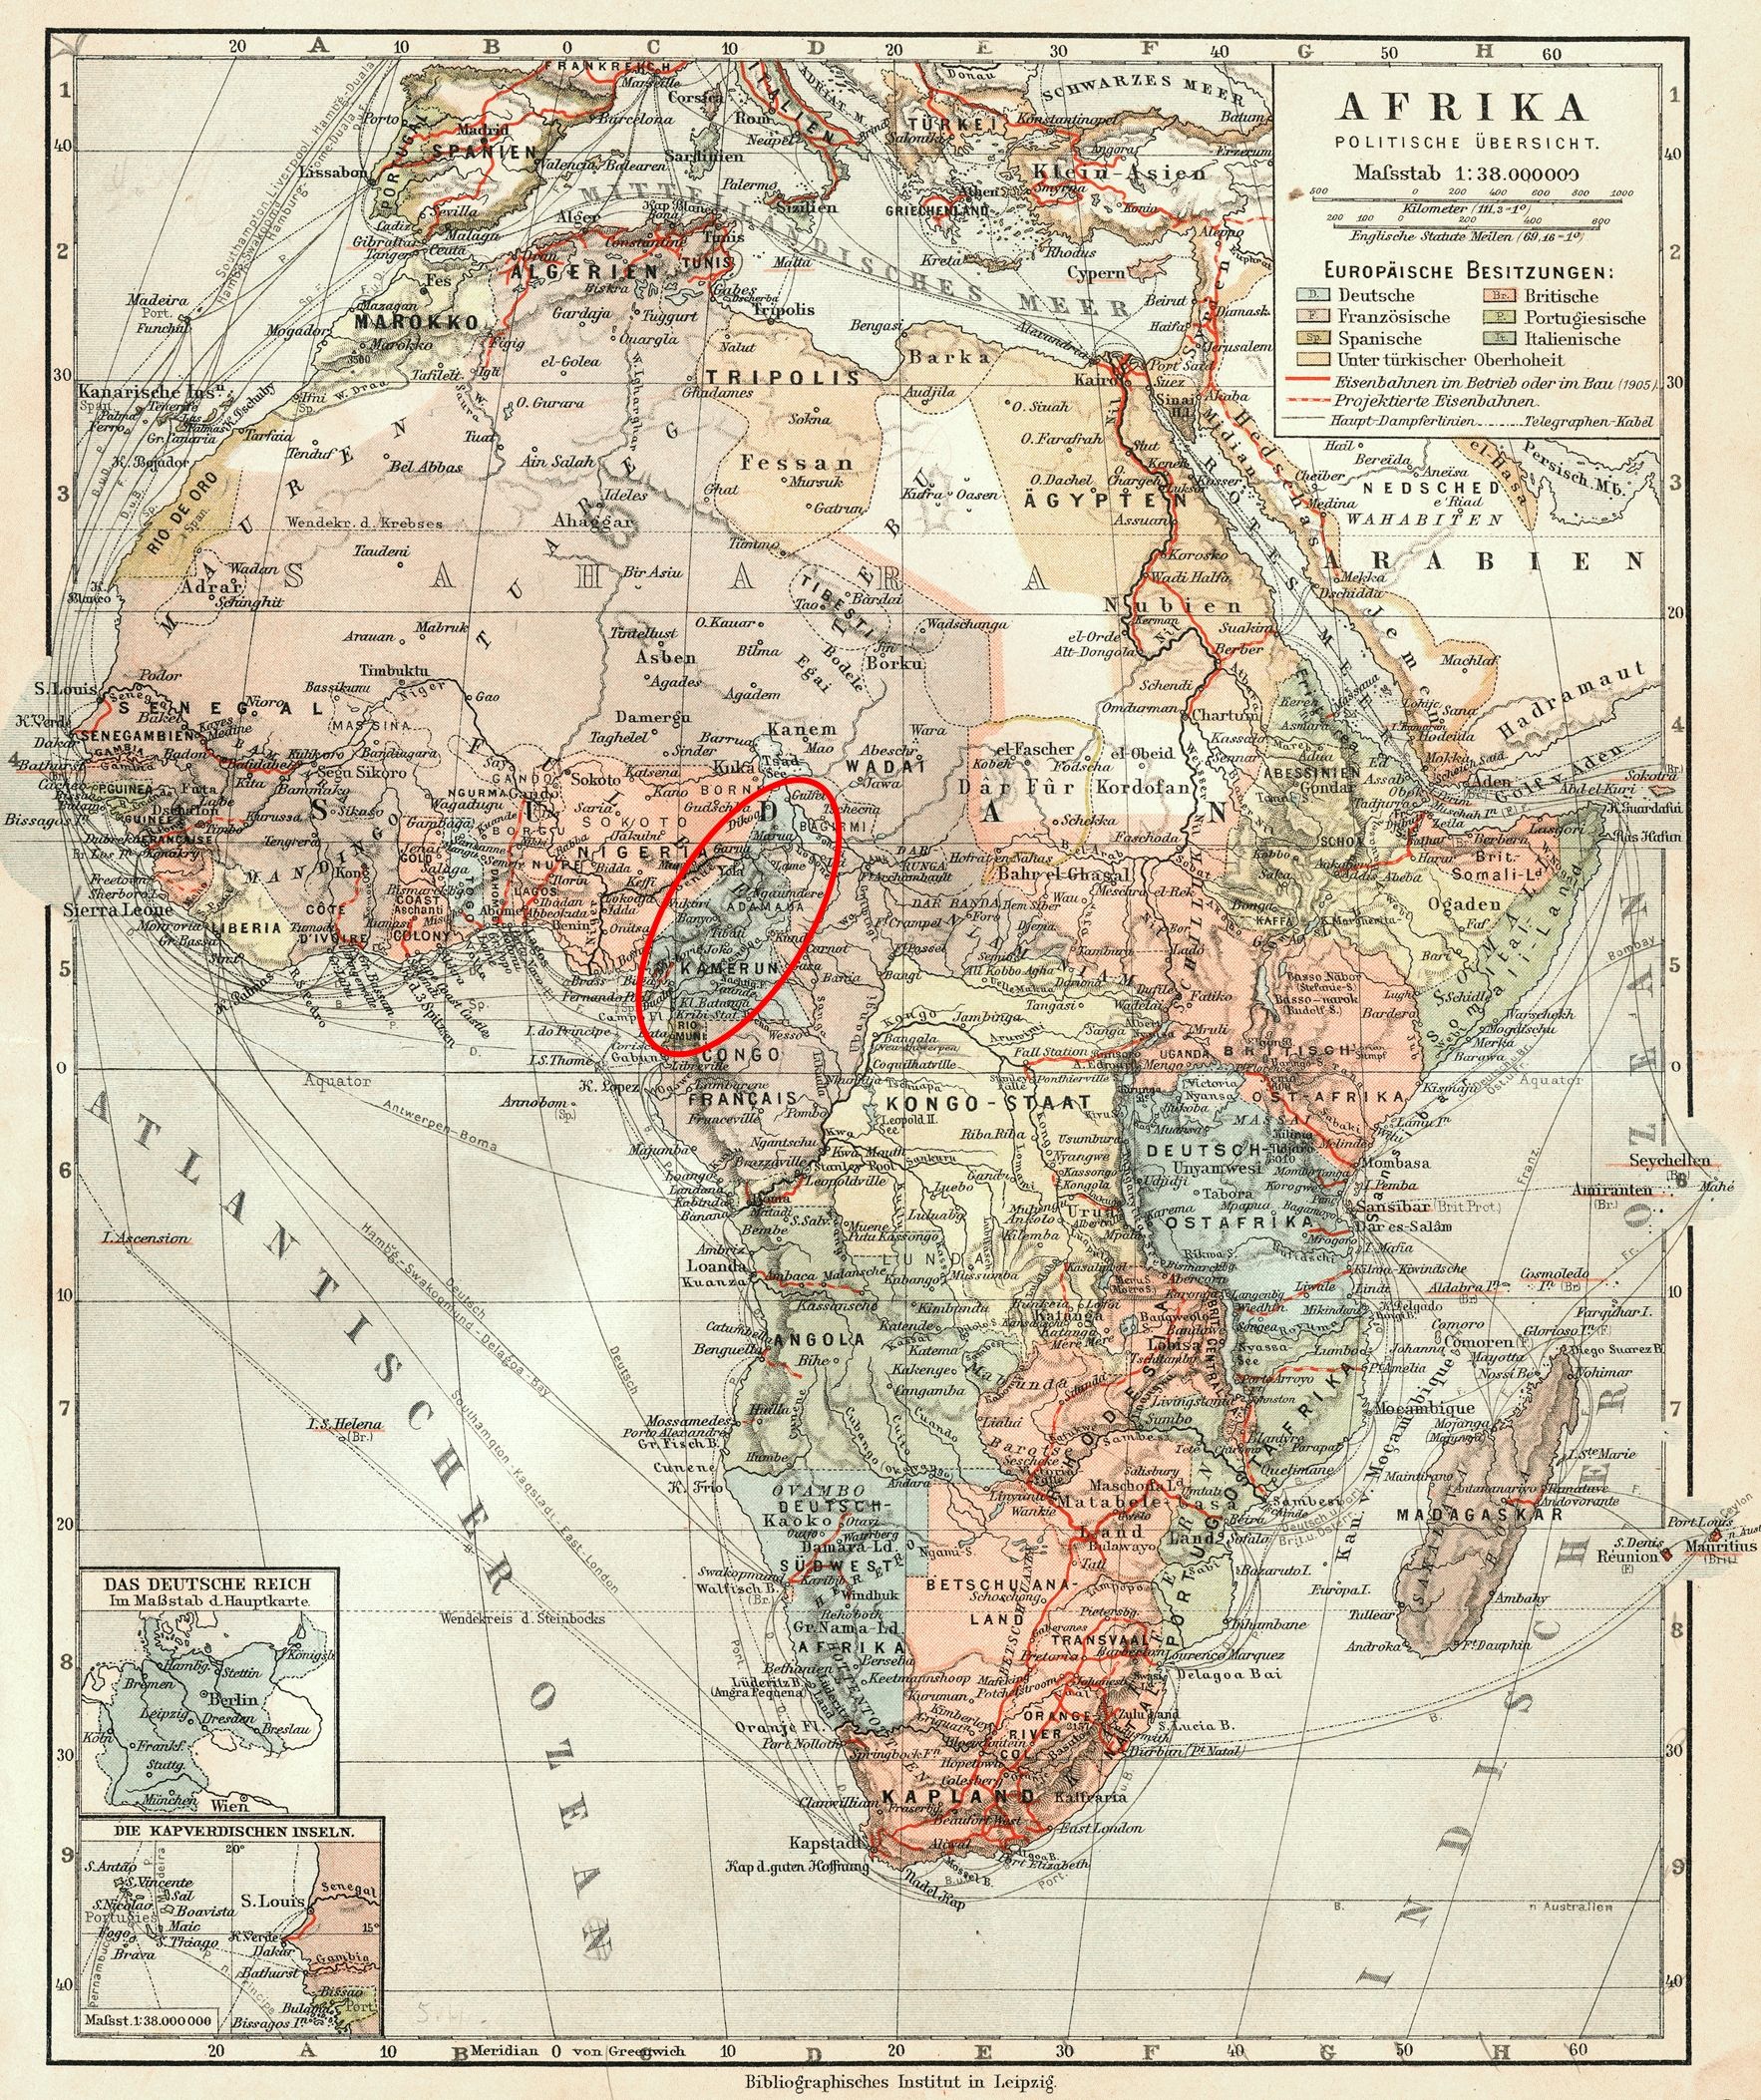 Szolcowi-Rogozińskiemu marzyła się wolna Polska w Kamerunie. Zaznaczony czerwonym kolorem na mapie Afryki z początków XX wieku.